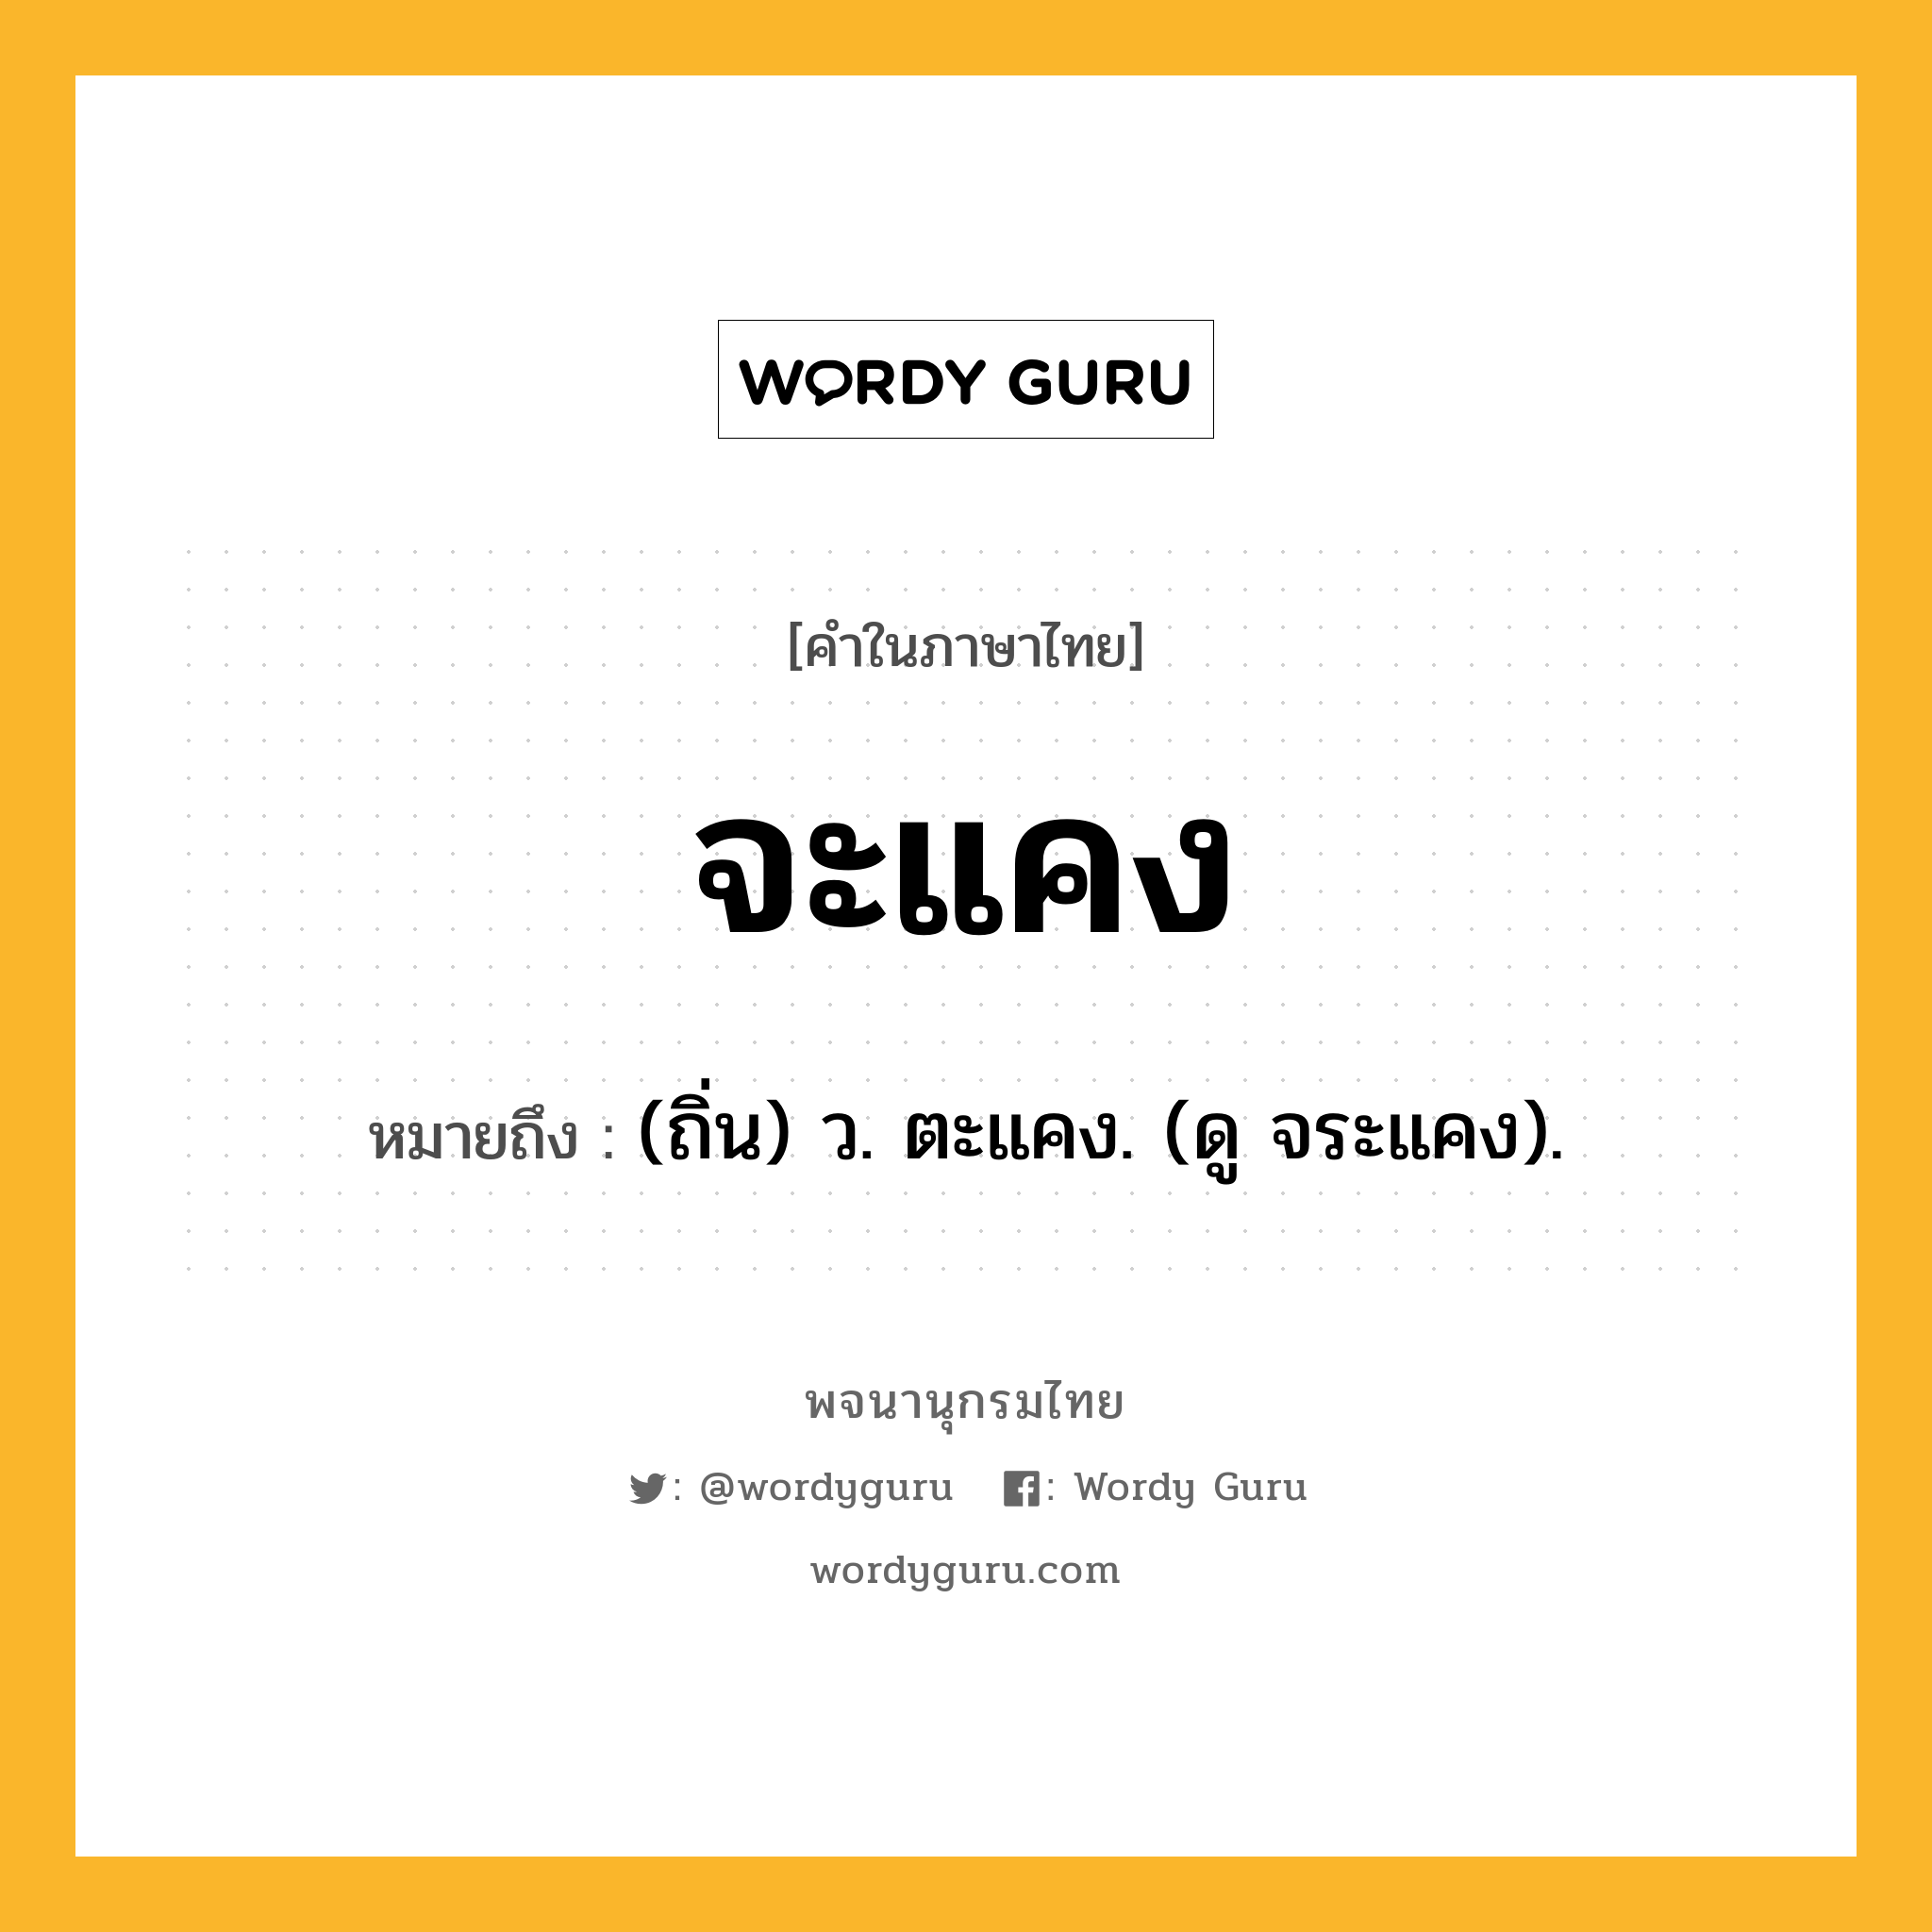 จะแคง ความหมาย หมายถึงอะไร?, คำในภาษาไทย จะแคง หมายถึง (ถิ่น) ว. ตะแคง. (ดู จระแคง).